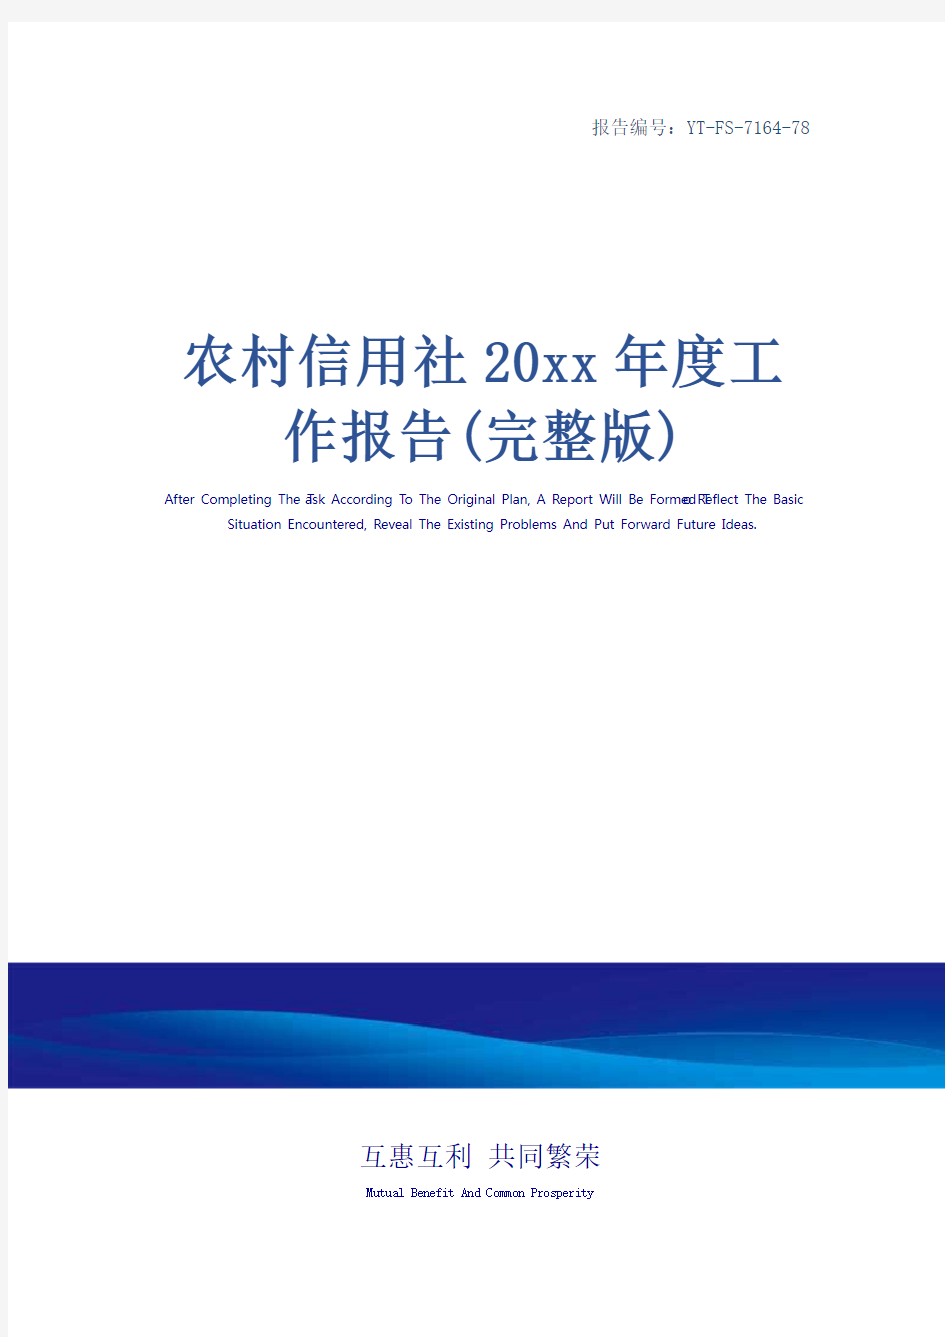 农村信用社20xx年度工作报告(完整版)